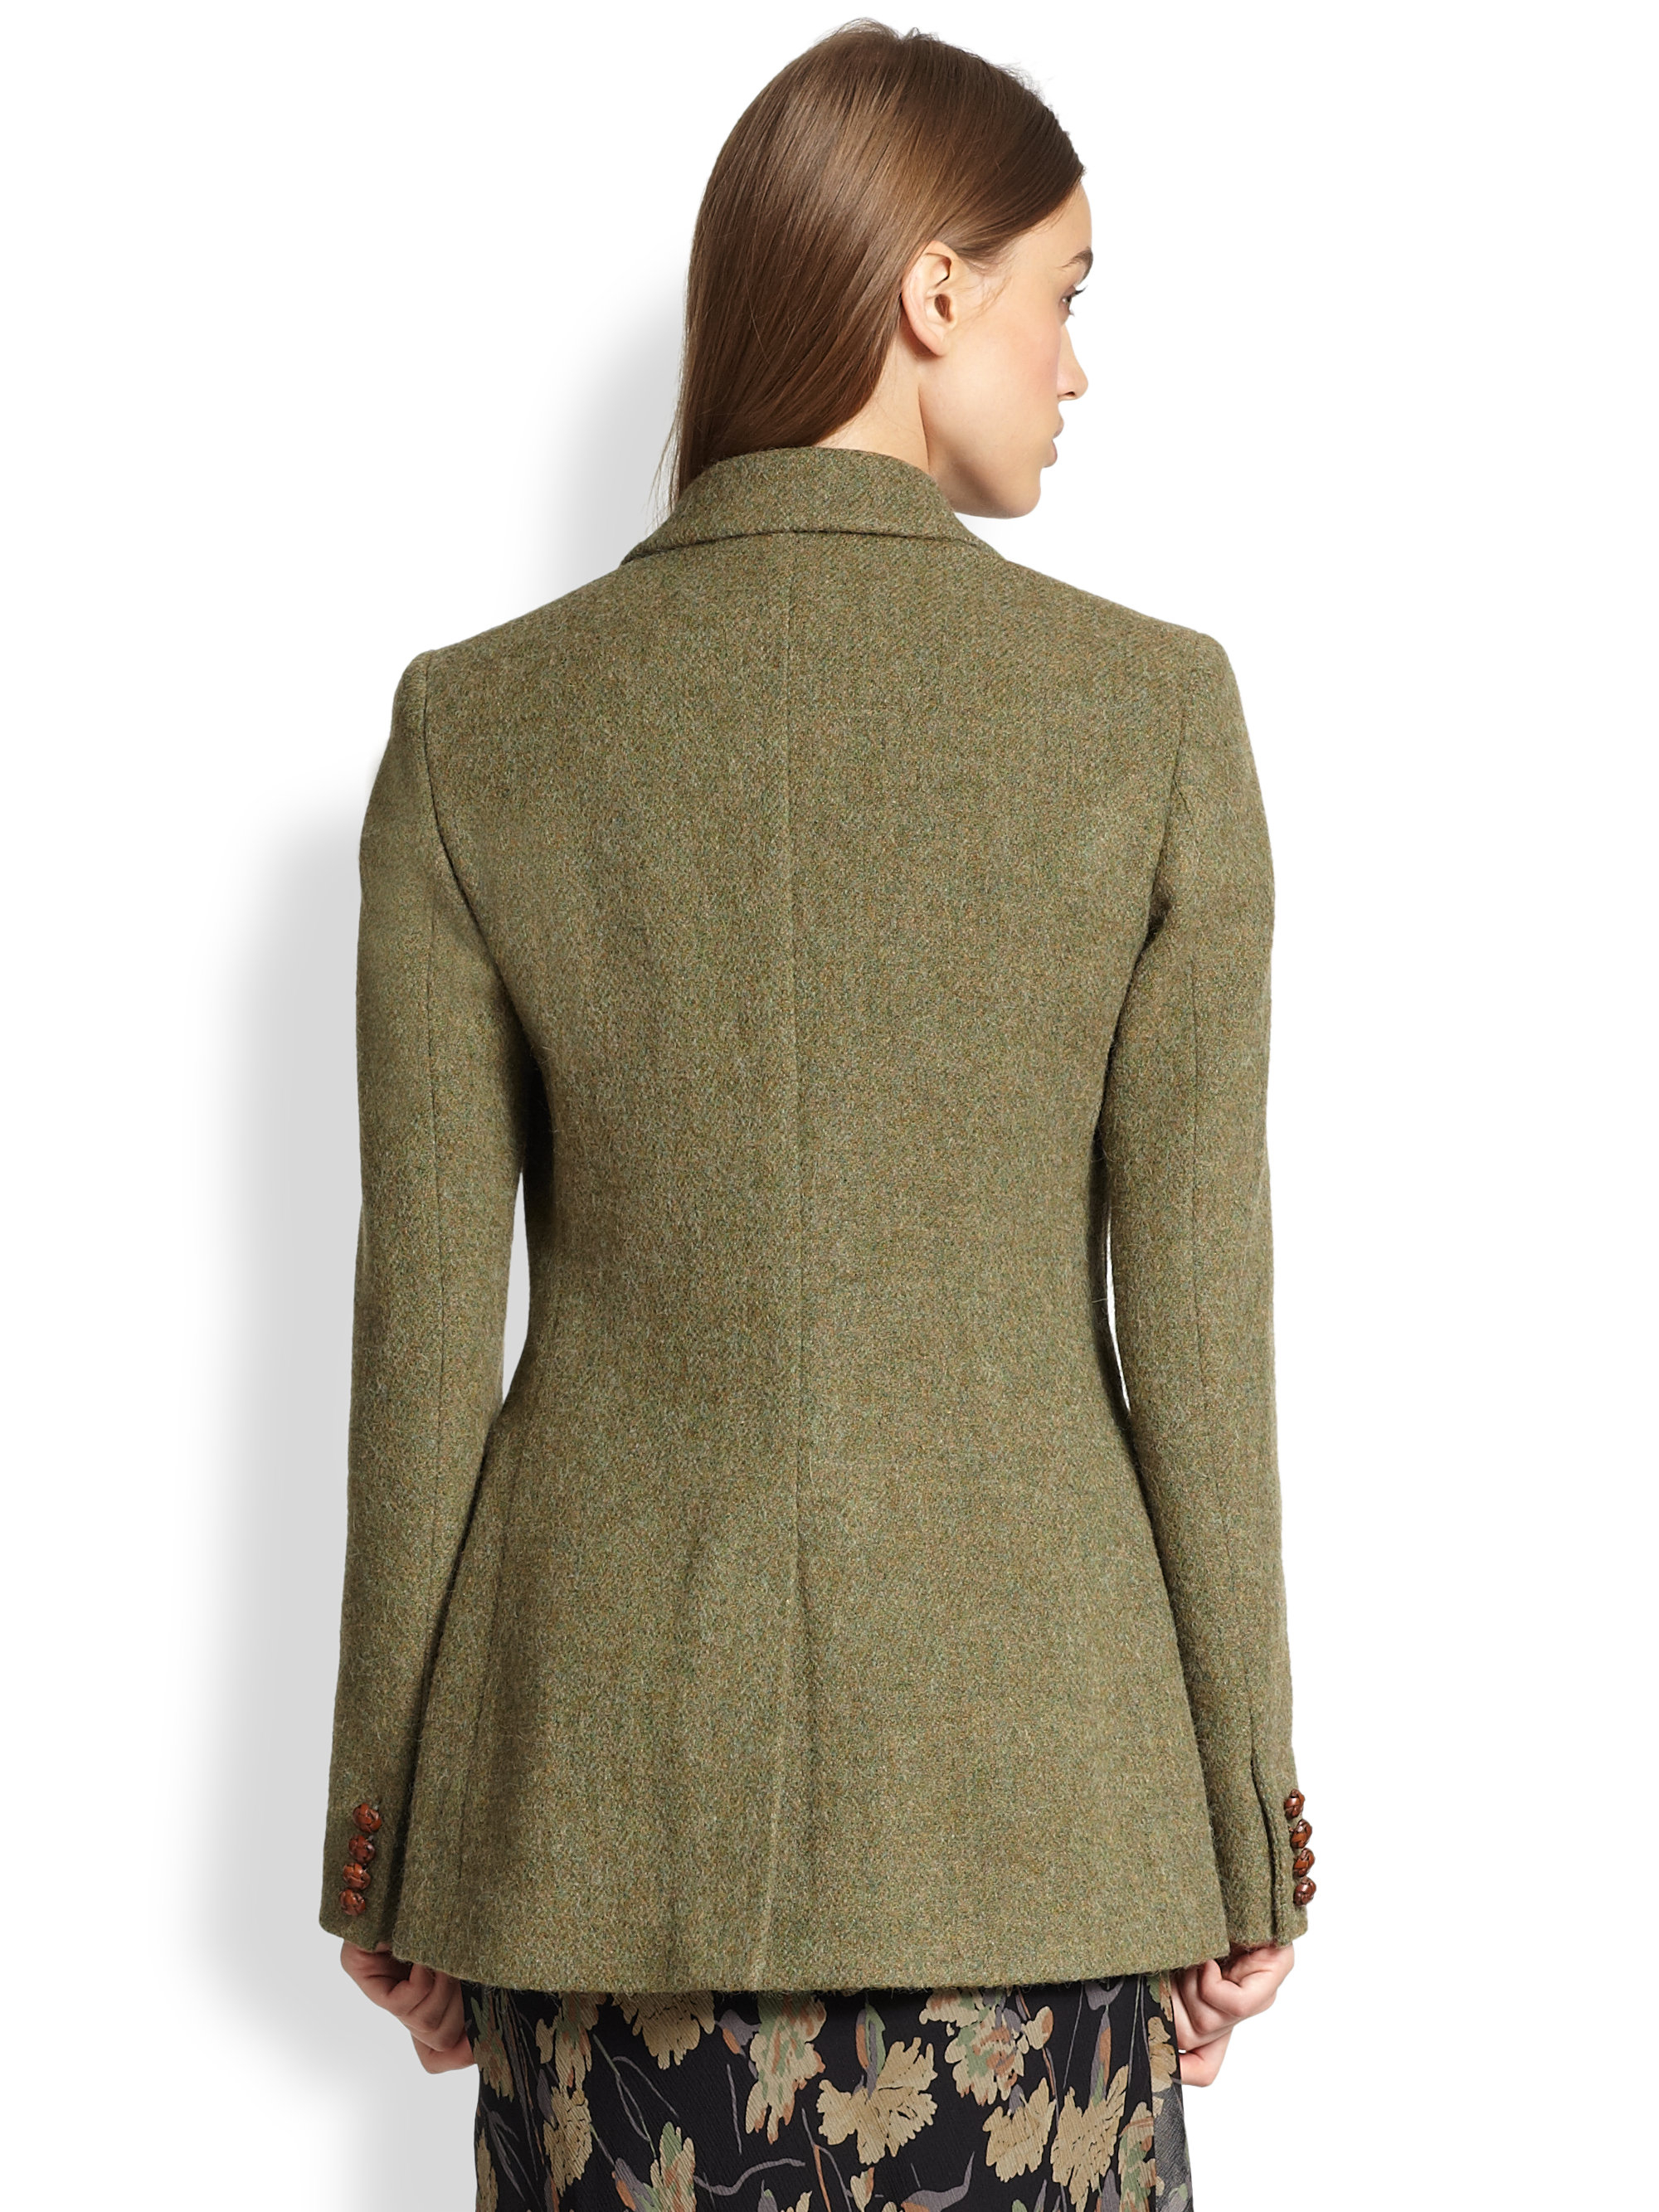 Polo Ralph Lauren Tweed Jacket in Green - Lyst